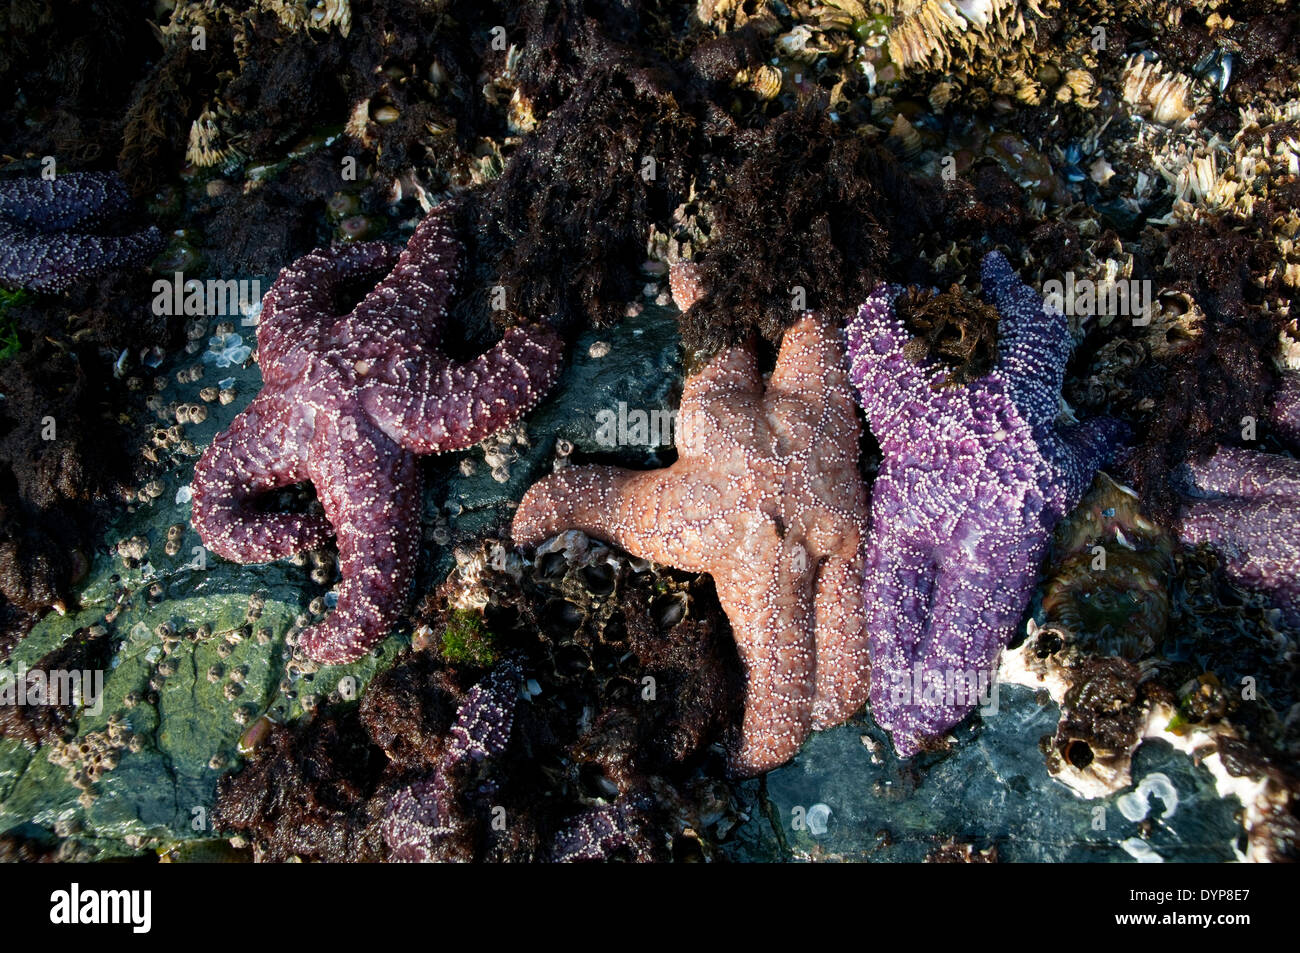 Groupe d'étoiles de mer colorées sur des roches couvertes de barnacle dans une zone intertidale de l'océan Pacifique dans la forêt tropicale du Grand Ours, Colombie-Britannique, Canada. Banque D'Images